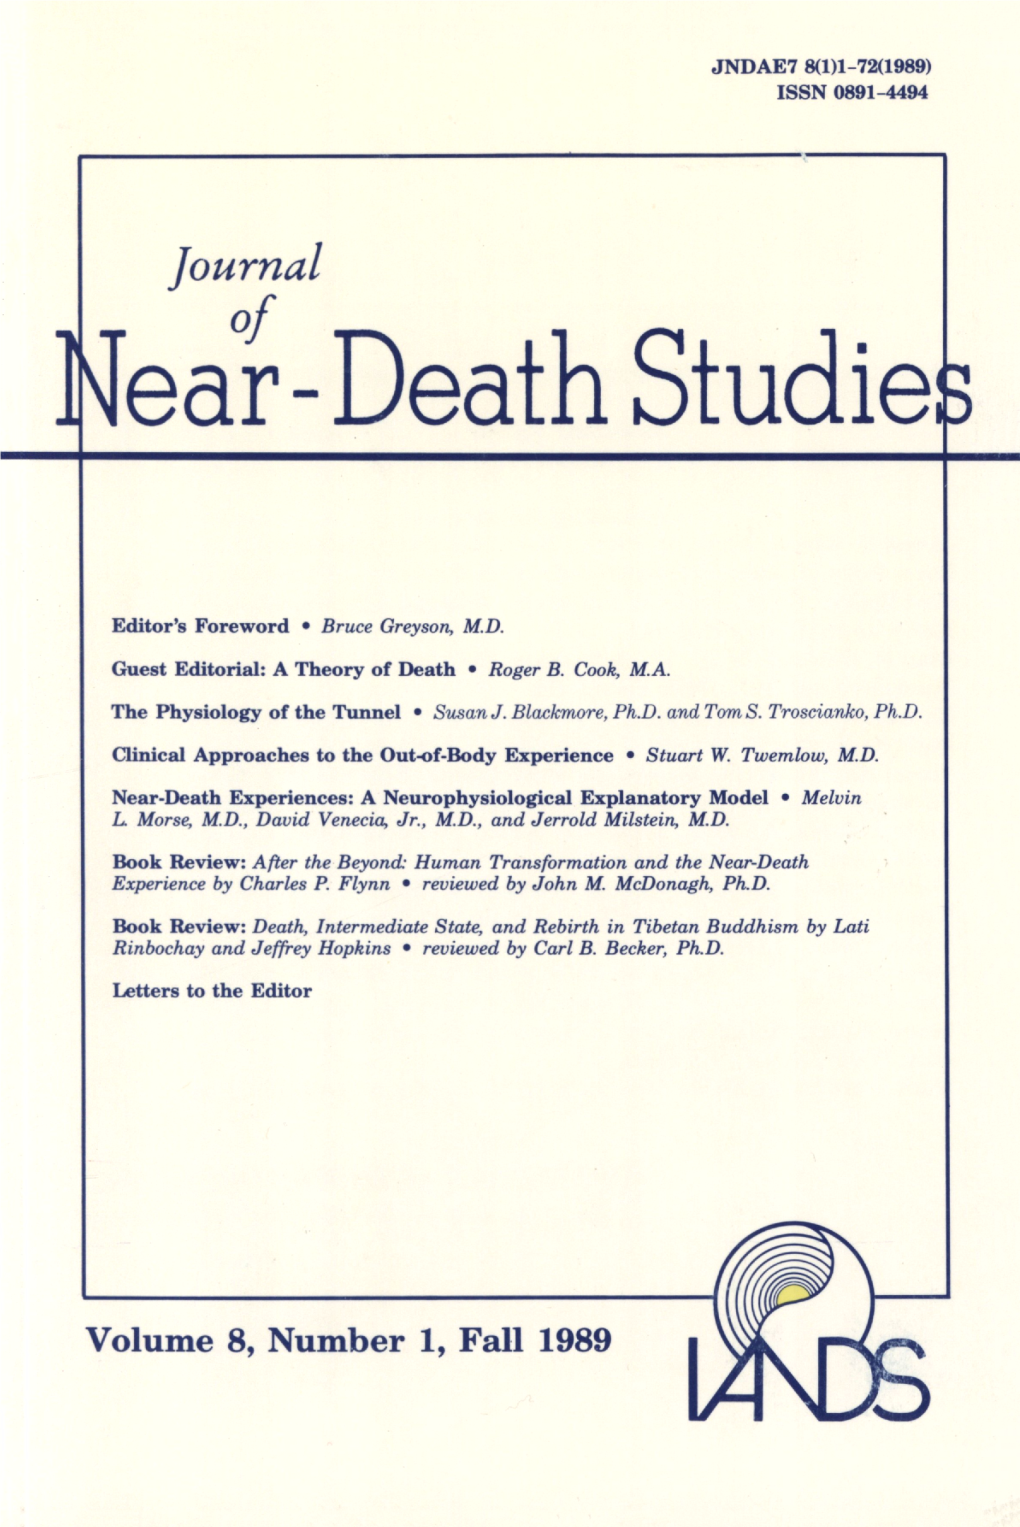 Near-Death Studie